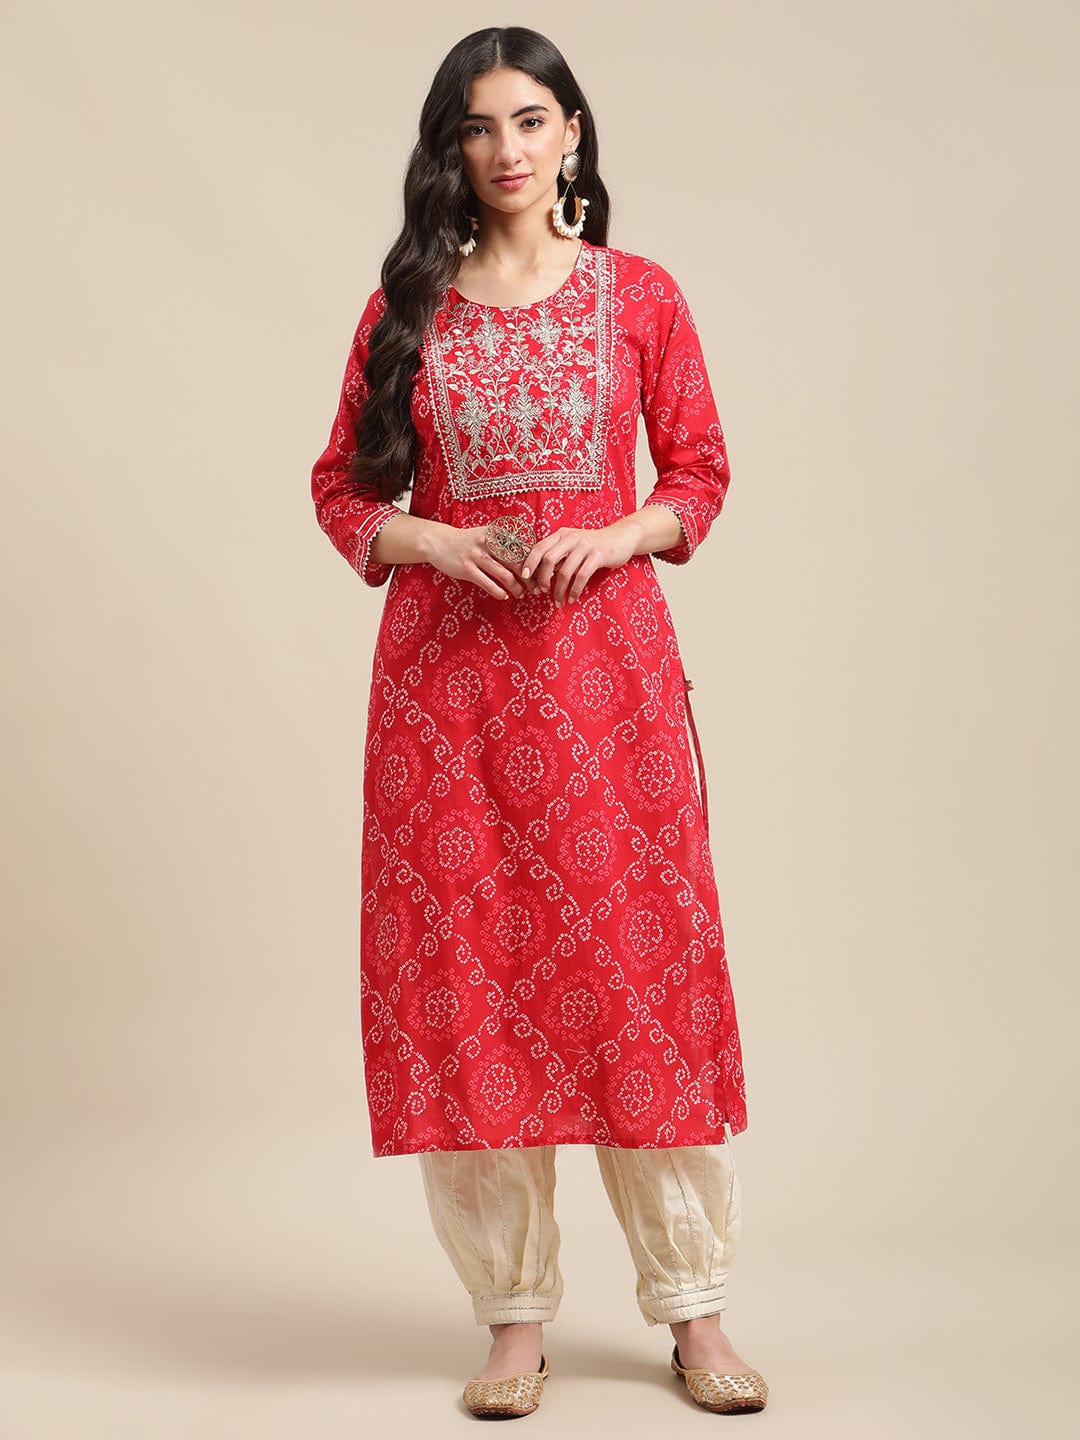 Women's Red And White Bandhej Printed Zari Embroidered Straight Kurta - Varanga